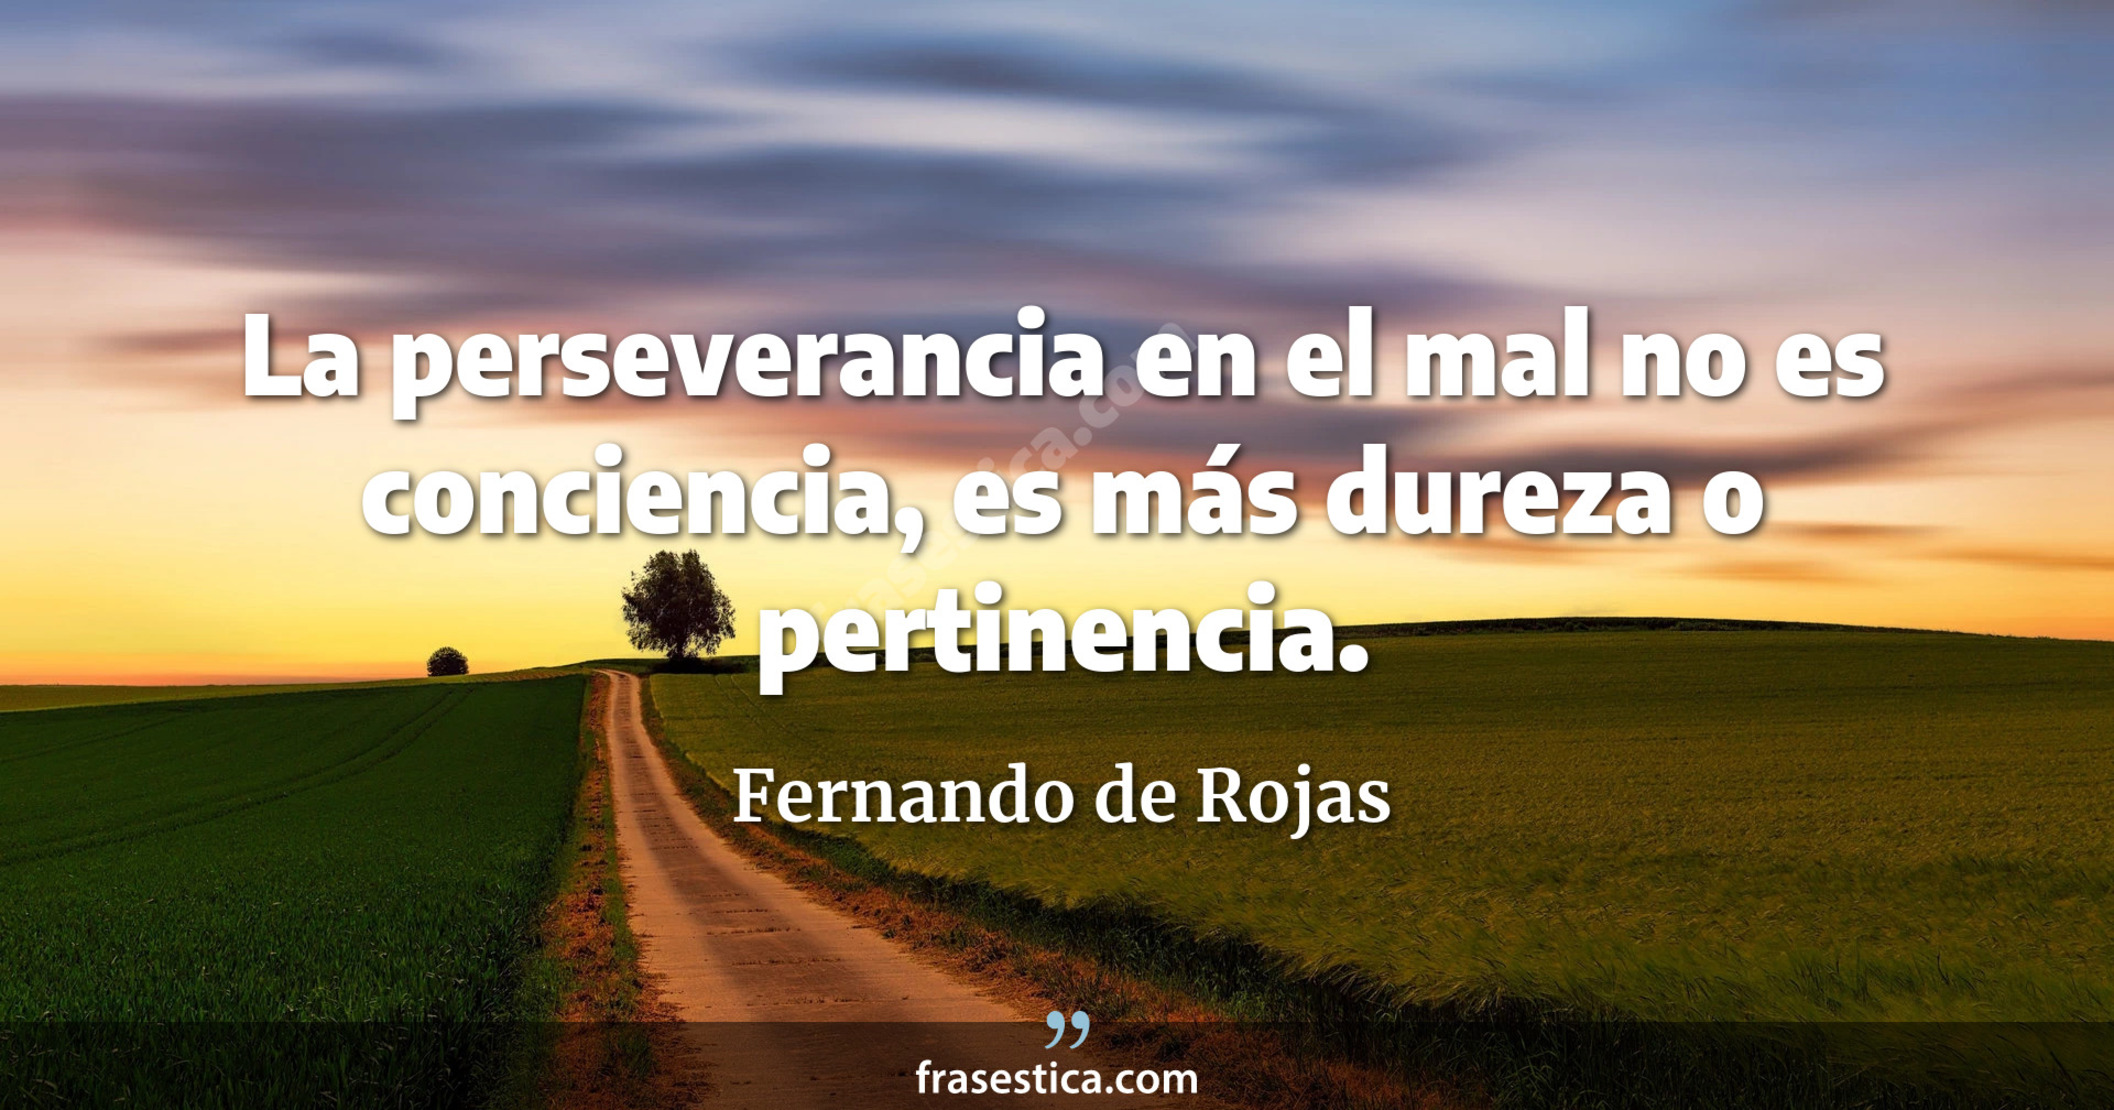 La perseverancia en el mal no es conciencia, es más dureza o pertinencia. - Fernando de Rojas